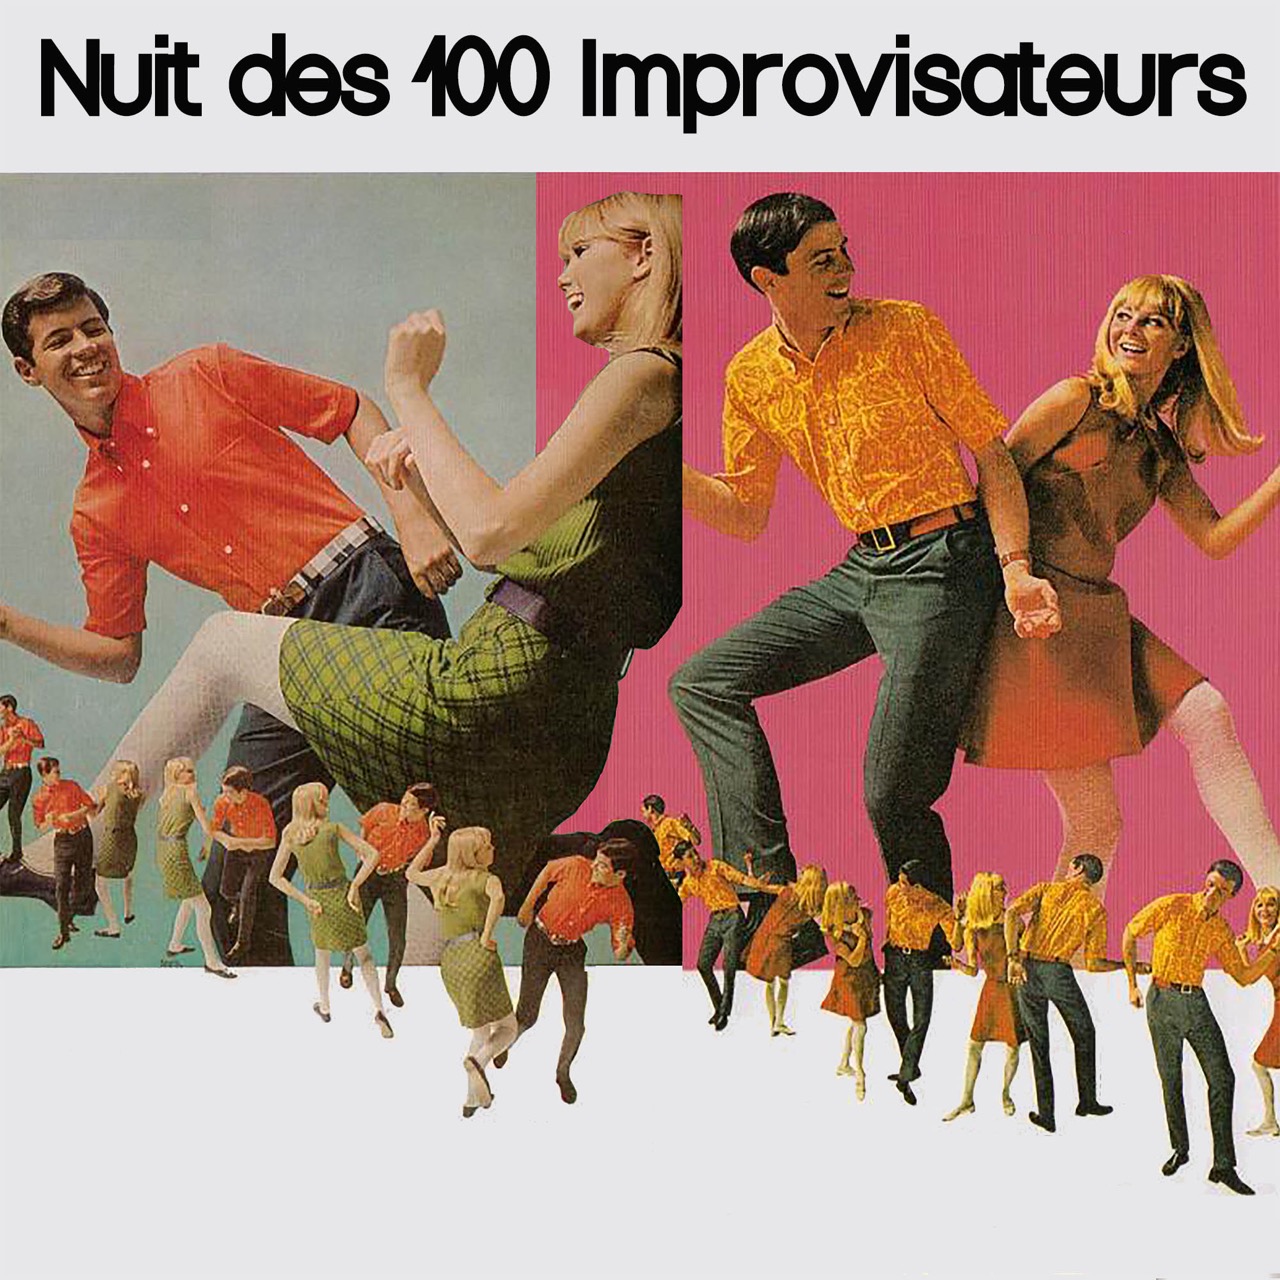 Affiche de la nuit des 100 improvisateurs